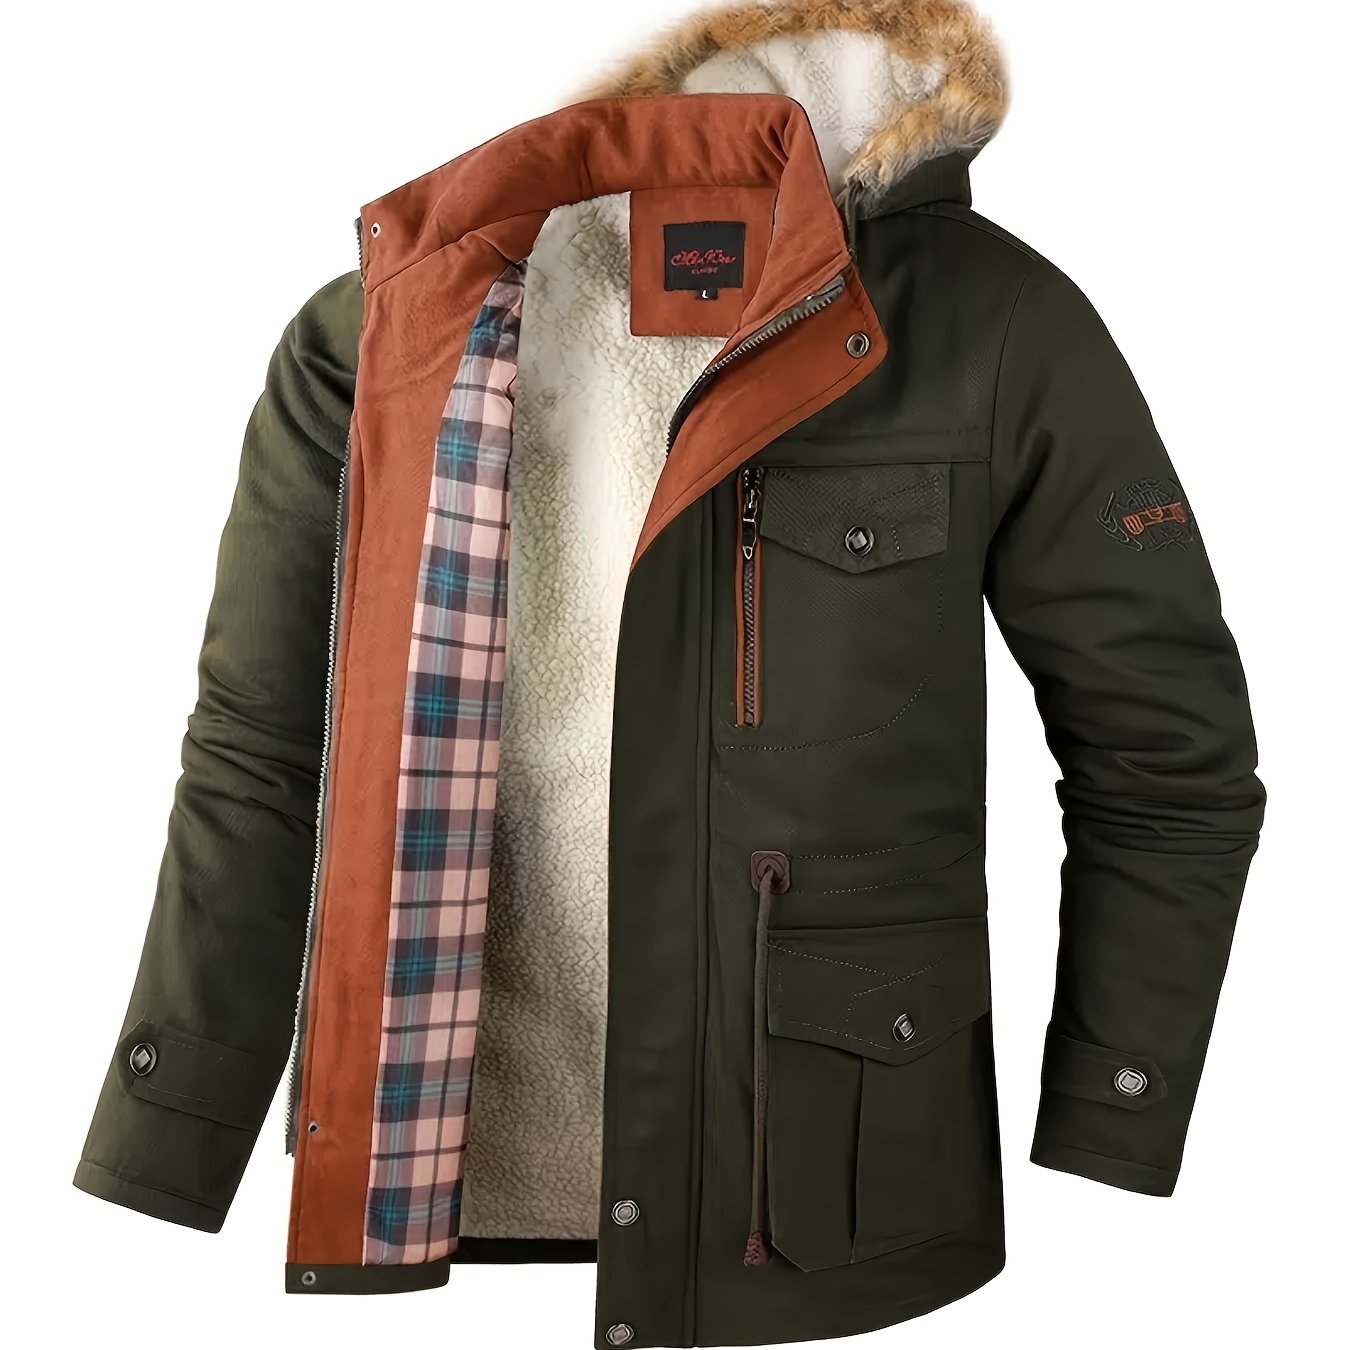 Men's Winter Fleece Thick Warm Puffer Coat Zipper Hooded Outwear Jacket ...